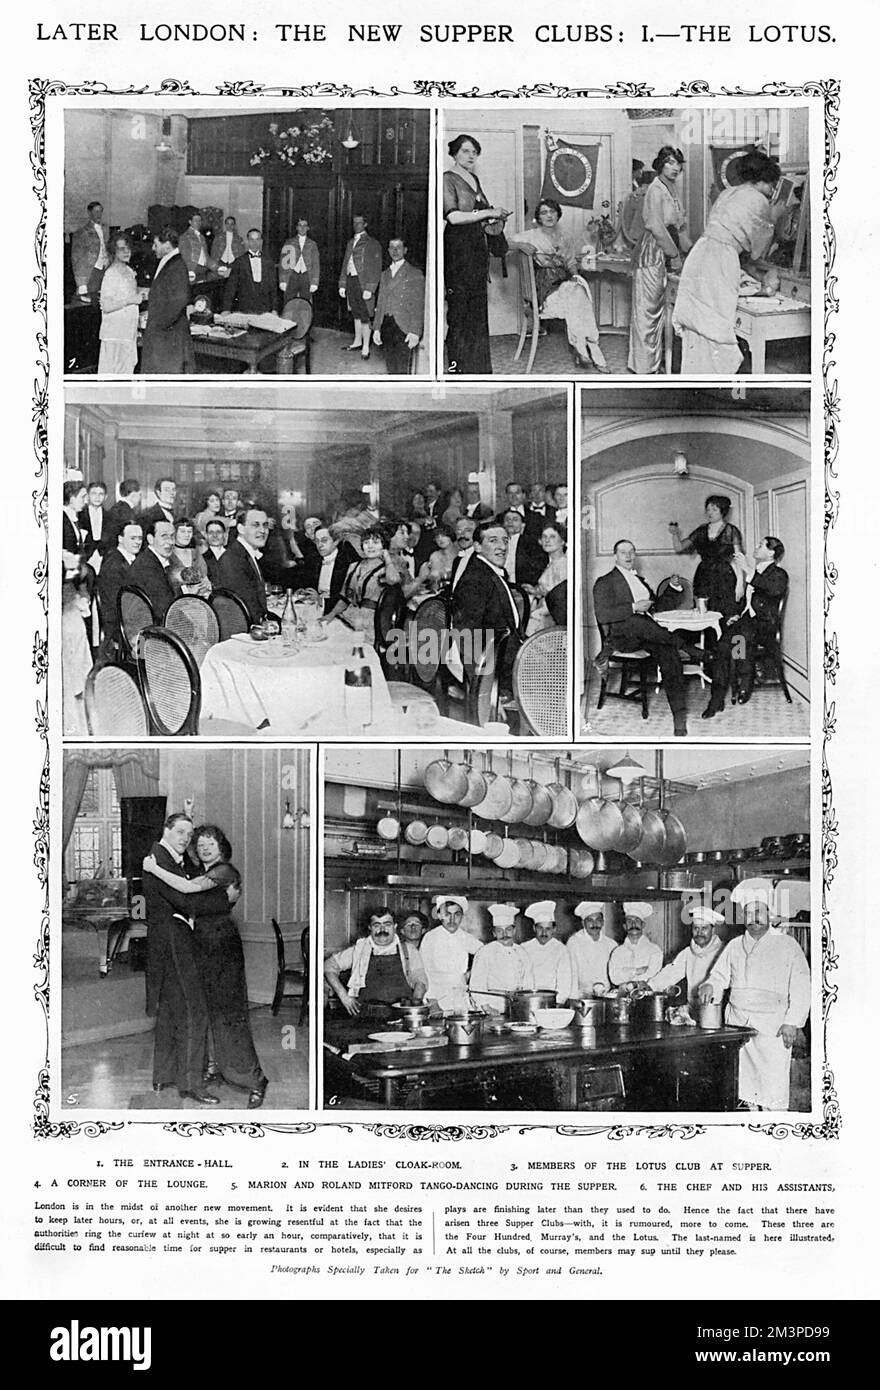 Neue Abendclubs in London - der Lotus. Eine Reihe von Fotografien, die speziell für The Sketch gemacht wurden, zeigen Szenen im Lotus Club, einem von mehreren Nachtclubs, die am Vorabend des Ersten Weltkriegs in der Hauptstadt auftauchen. Auf den Bildern sehen Sie die Eingangshalle, die Garderobe, die Gäste an den Esstischen, eine Ecke der Lounge, die Ausstellungstanz Marion und Roland Mitford, die den Tango vorführen, und den Koch mit seinen Assistenten. Datum: 1914 Stockfoto